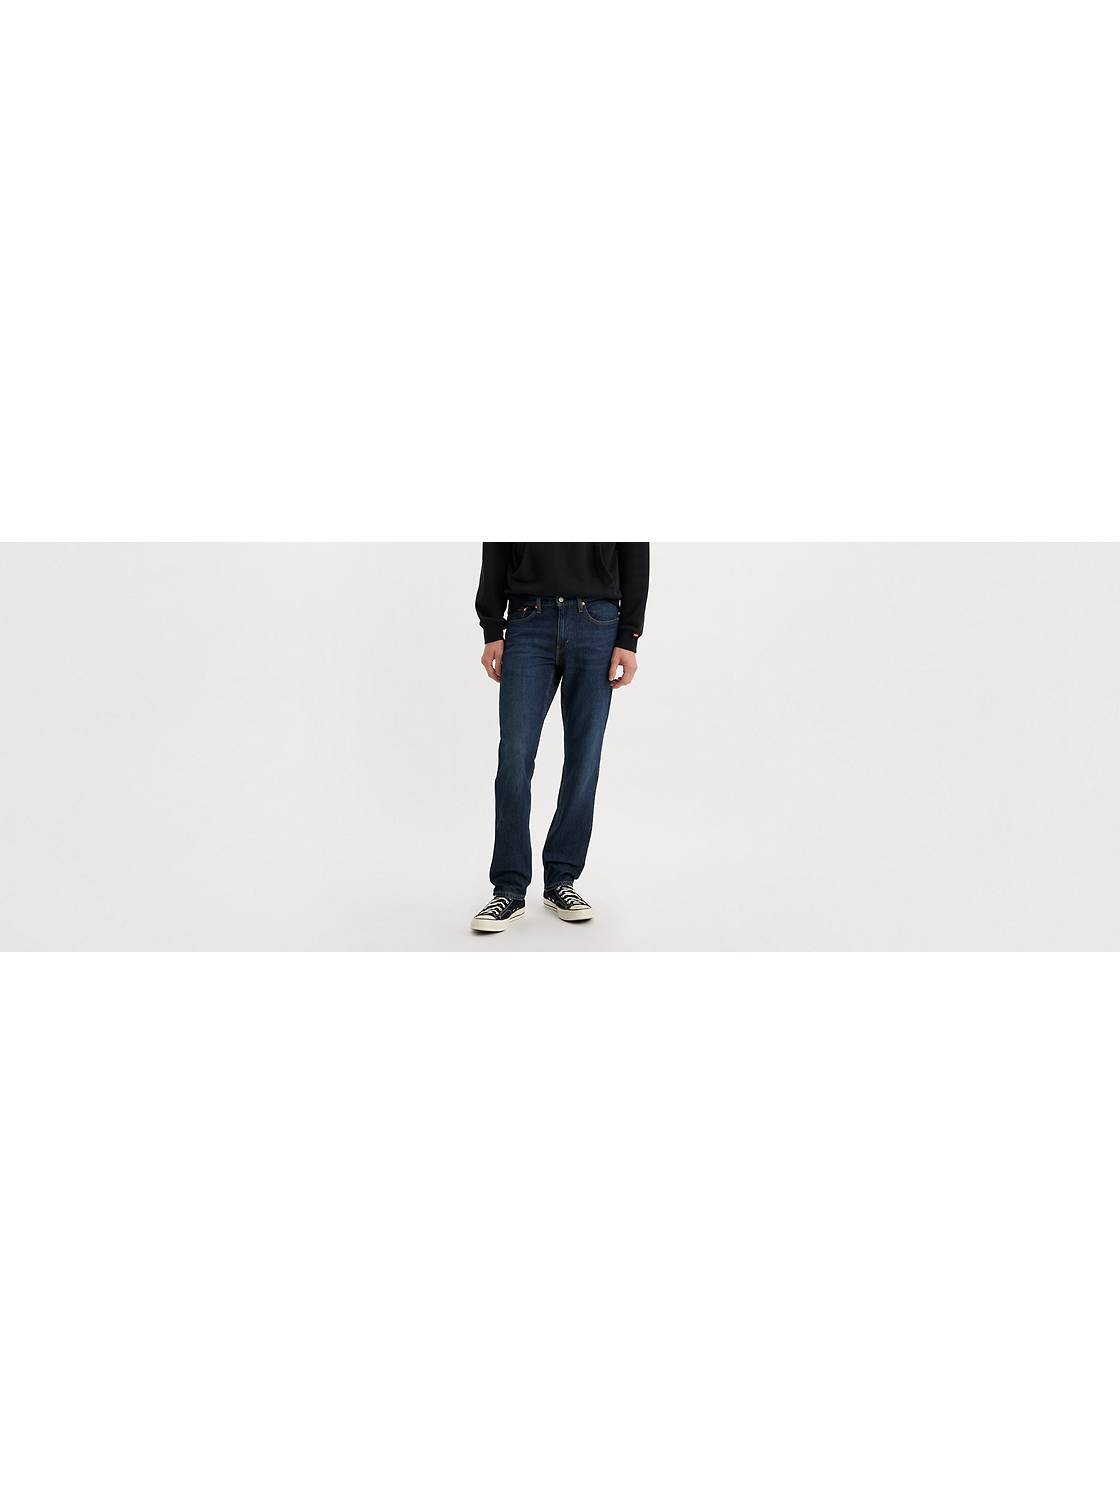 Levi's Withide Ceinture en jean réversible pour homme, noir/marron. :  : Mode